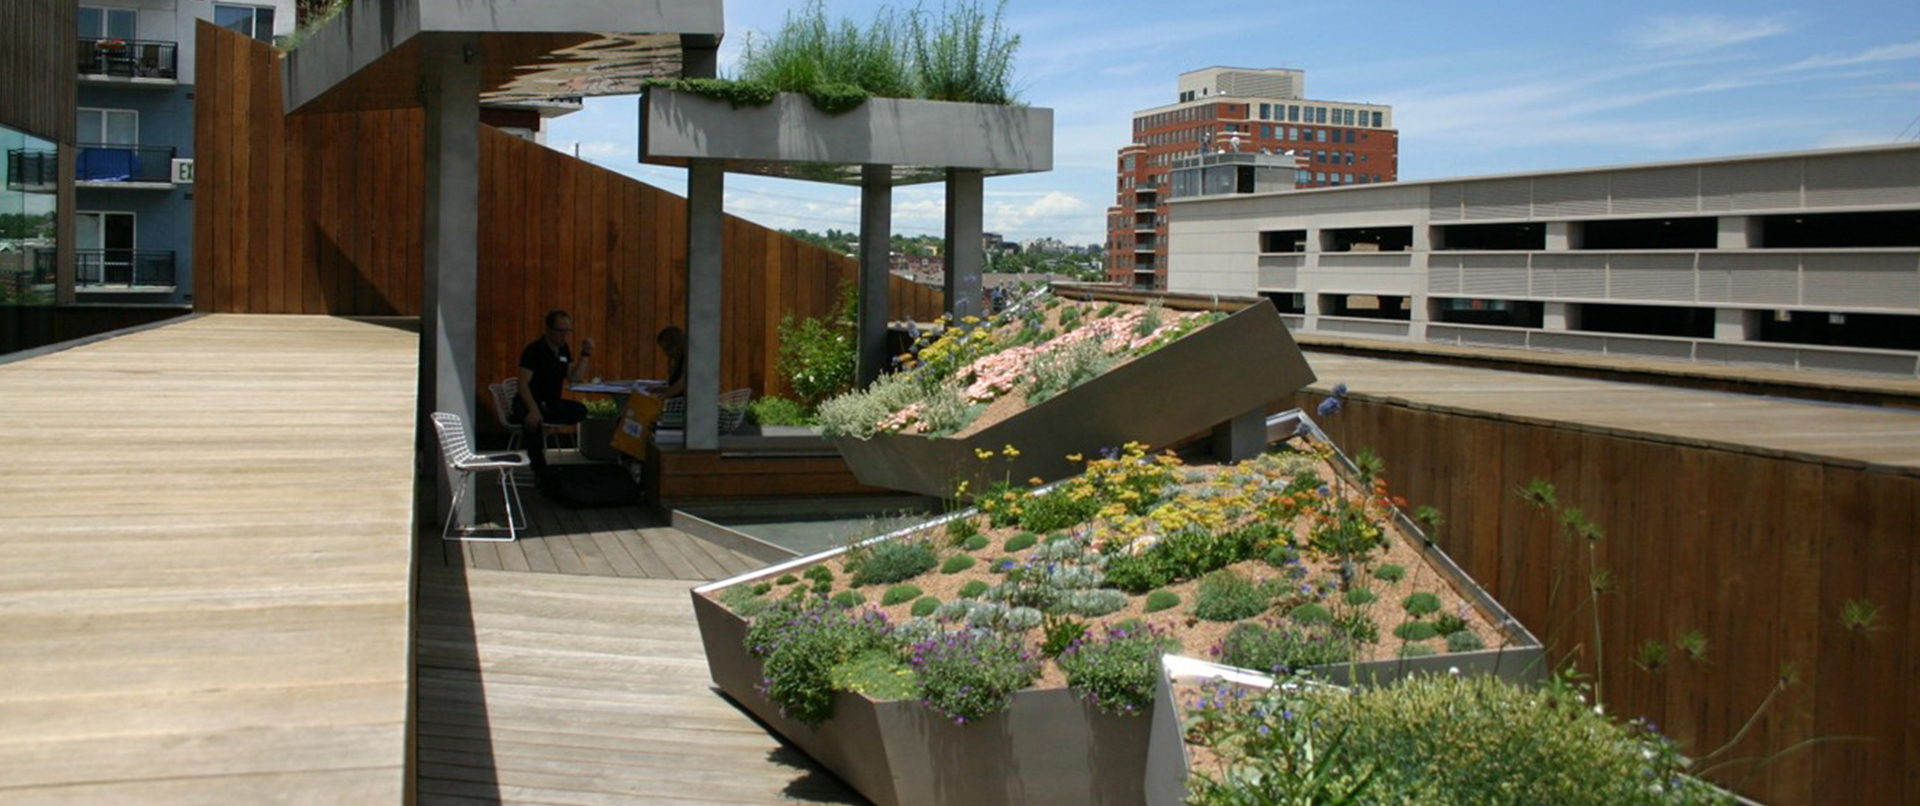 Rooftop Café Deck 